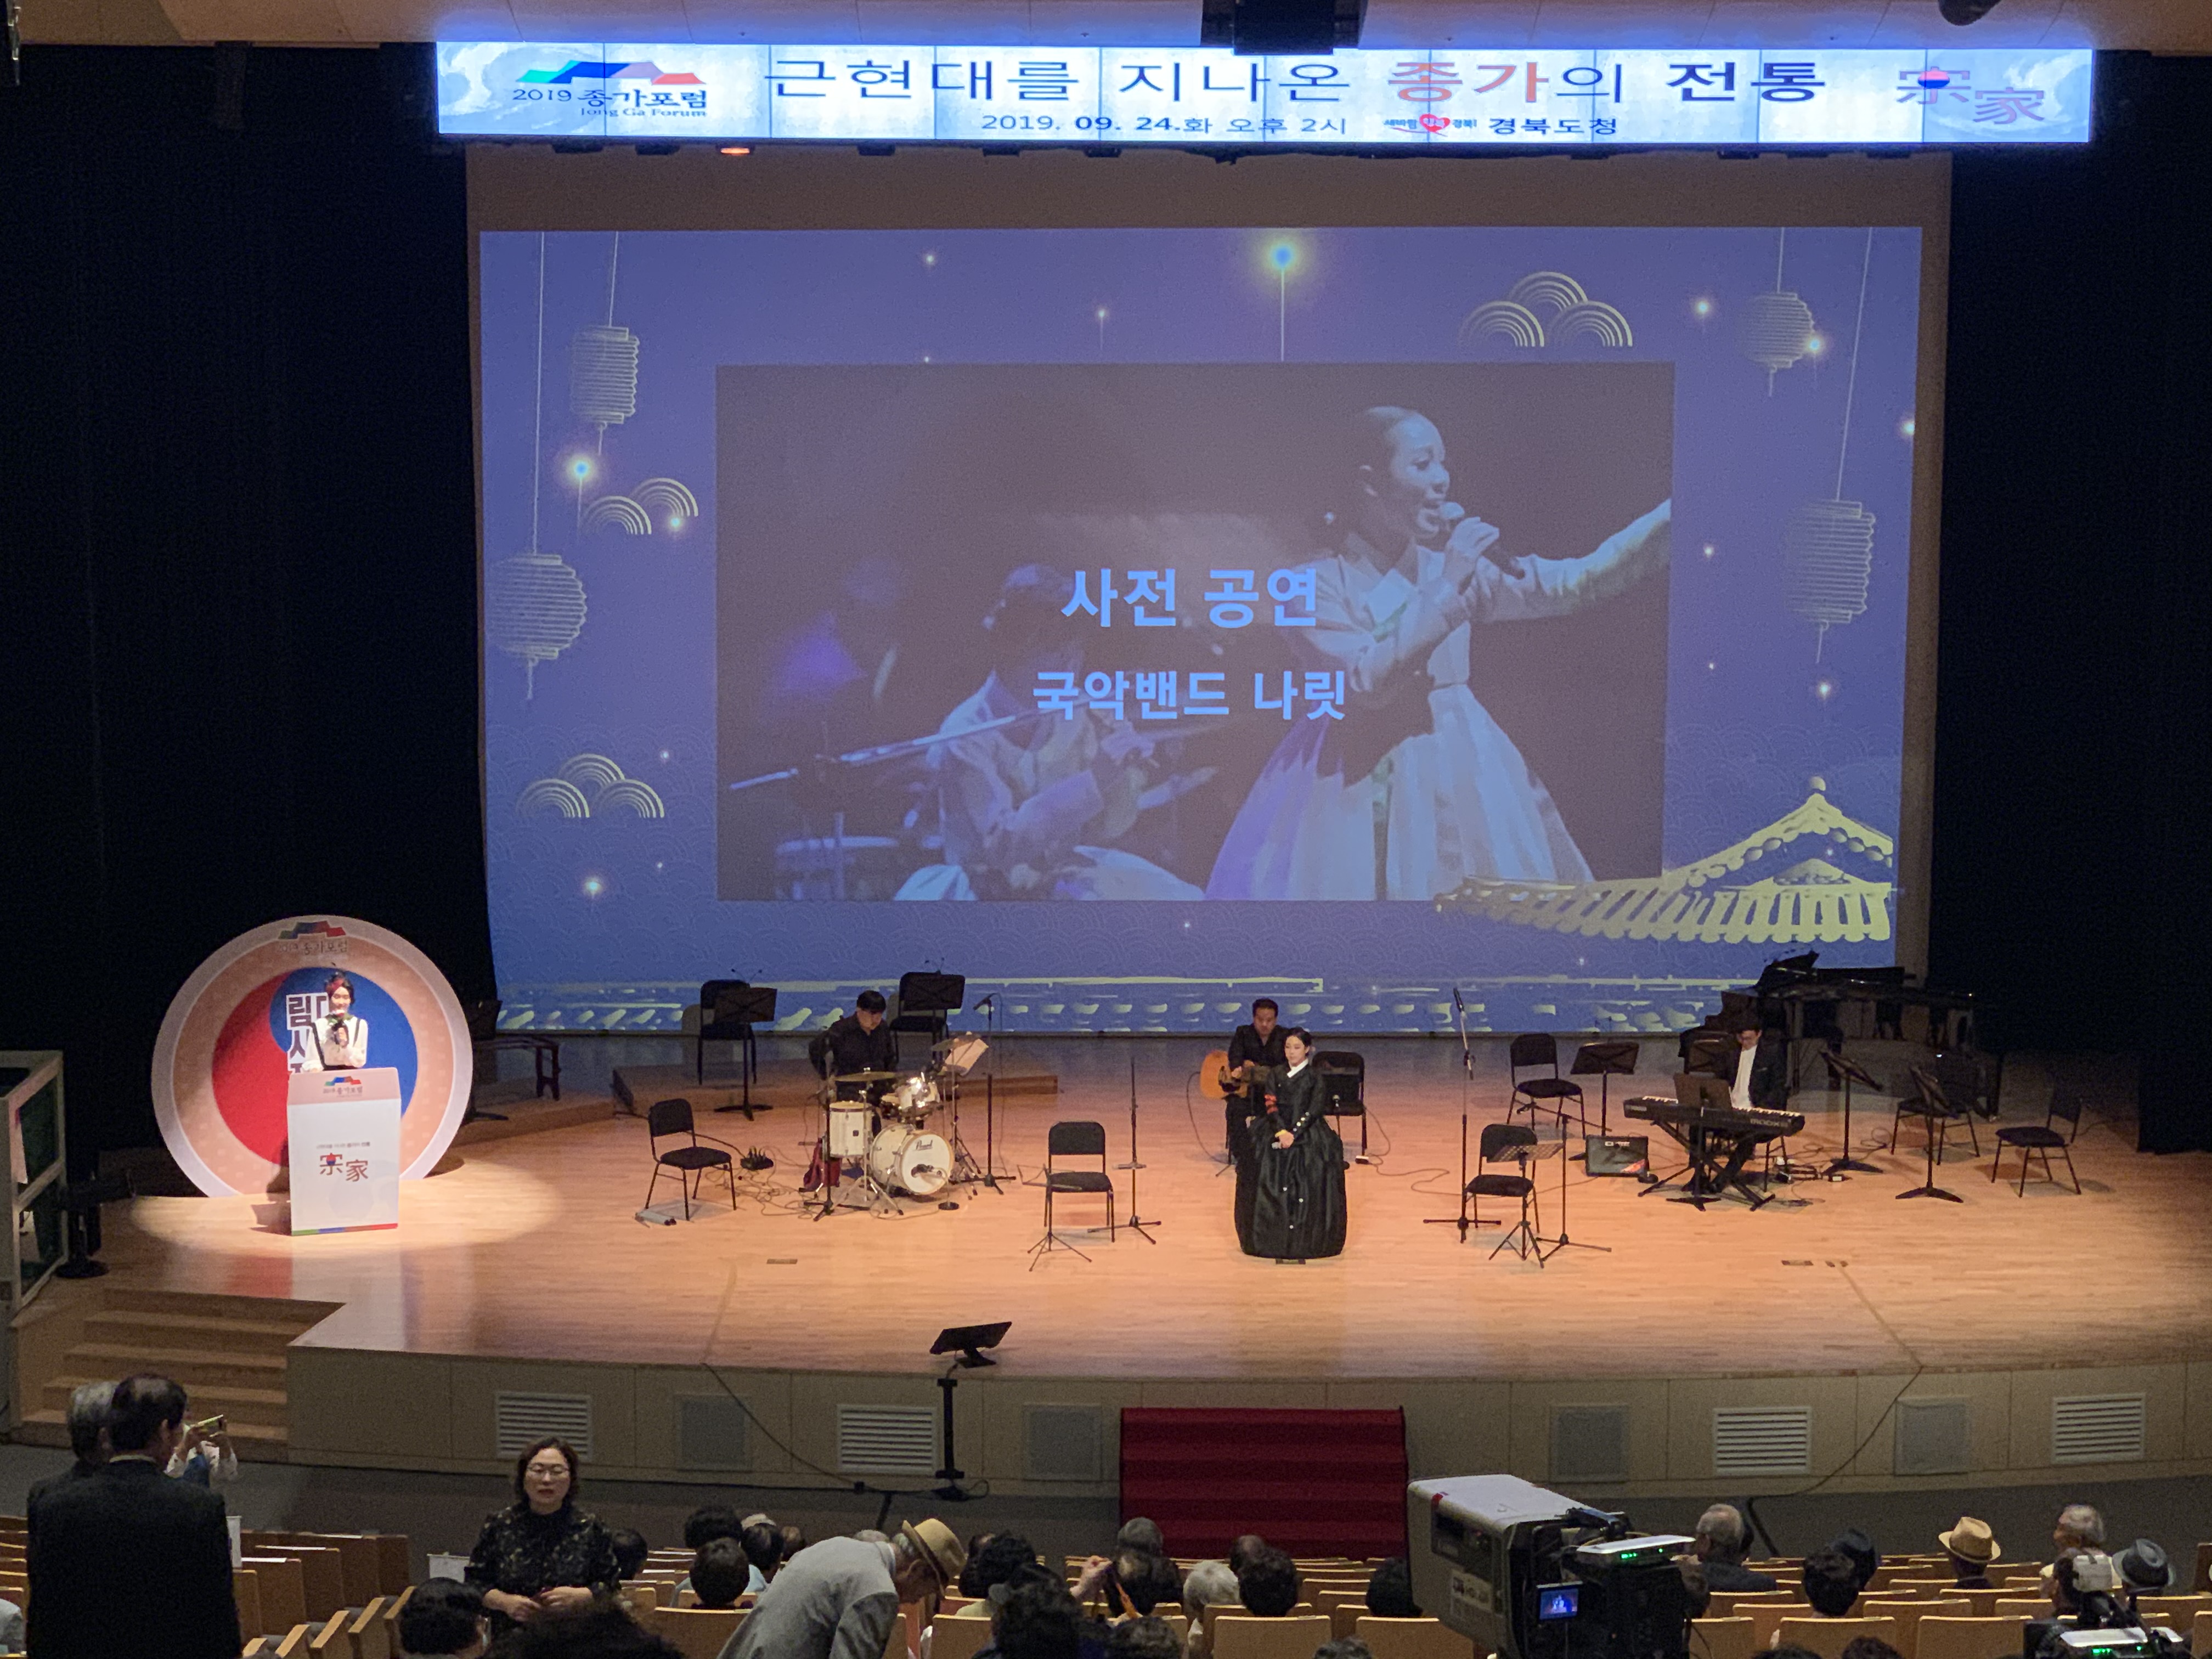 2019년 종가포럼 사전공연 국악밴드 나릿 공연준비 모습